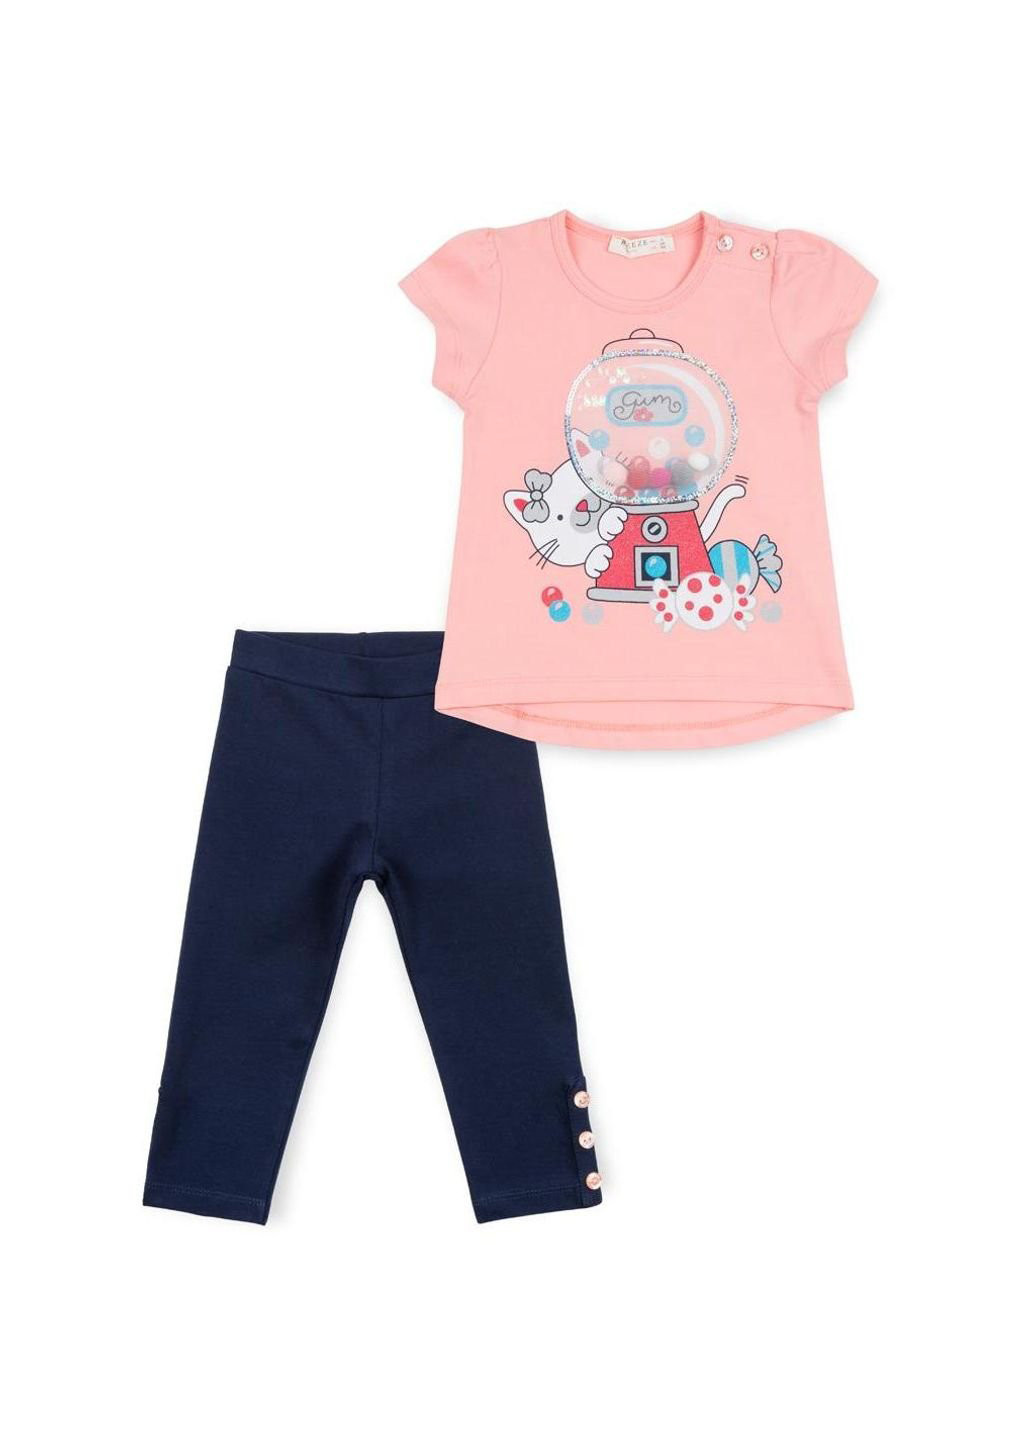 Синий набор детской одежды с котиком и конфетками (11830-92g-peach) Breeze